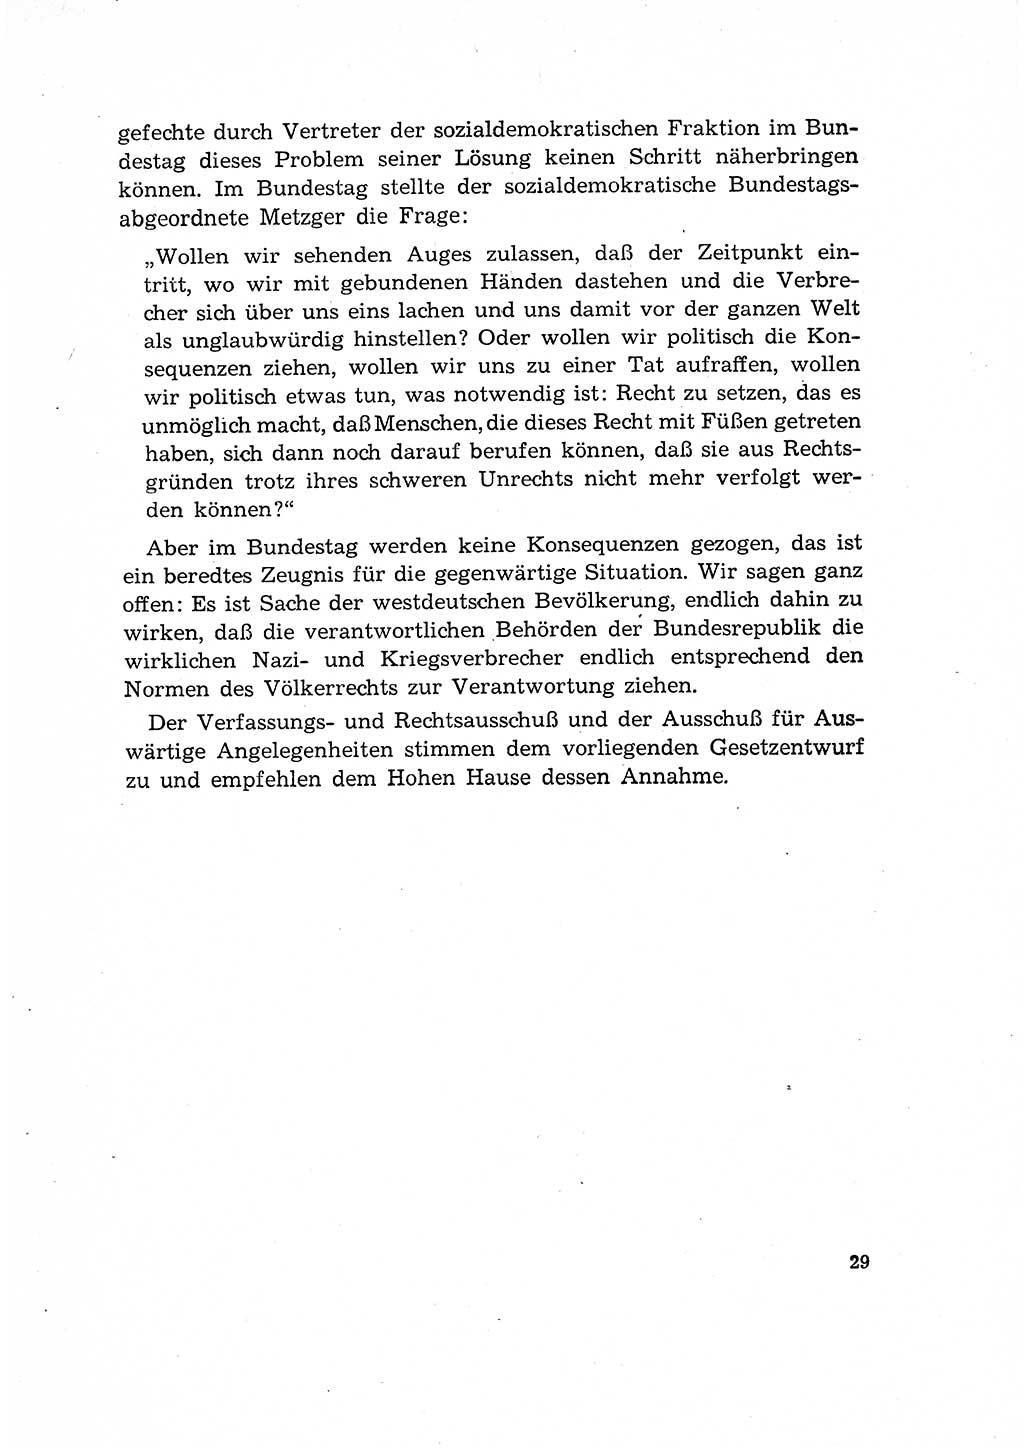 Bestrafung der Nazi- und Kriegsverbrecher [Deutsche Demokratische Republik (DDR)] 1964, Seite 29 (Bestr. Nazi-Kr.-Verbr. DDR 1964, S. 29)